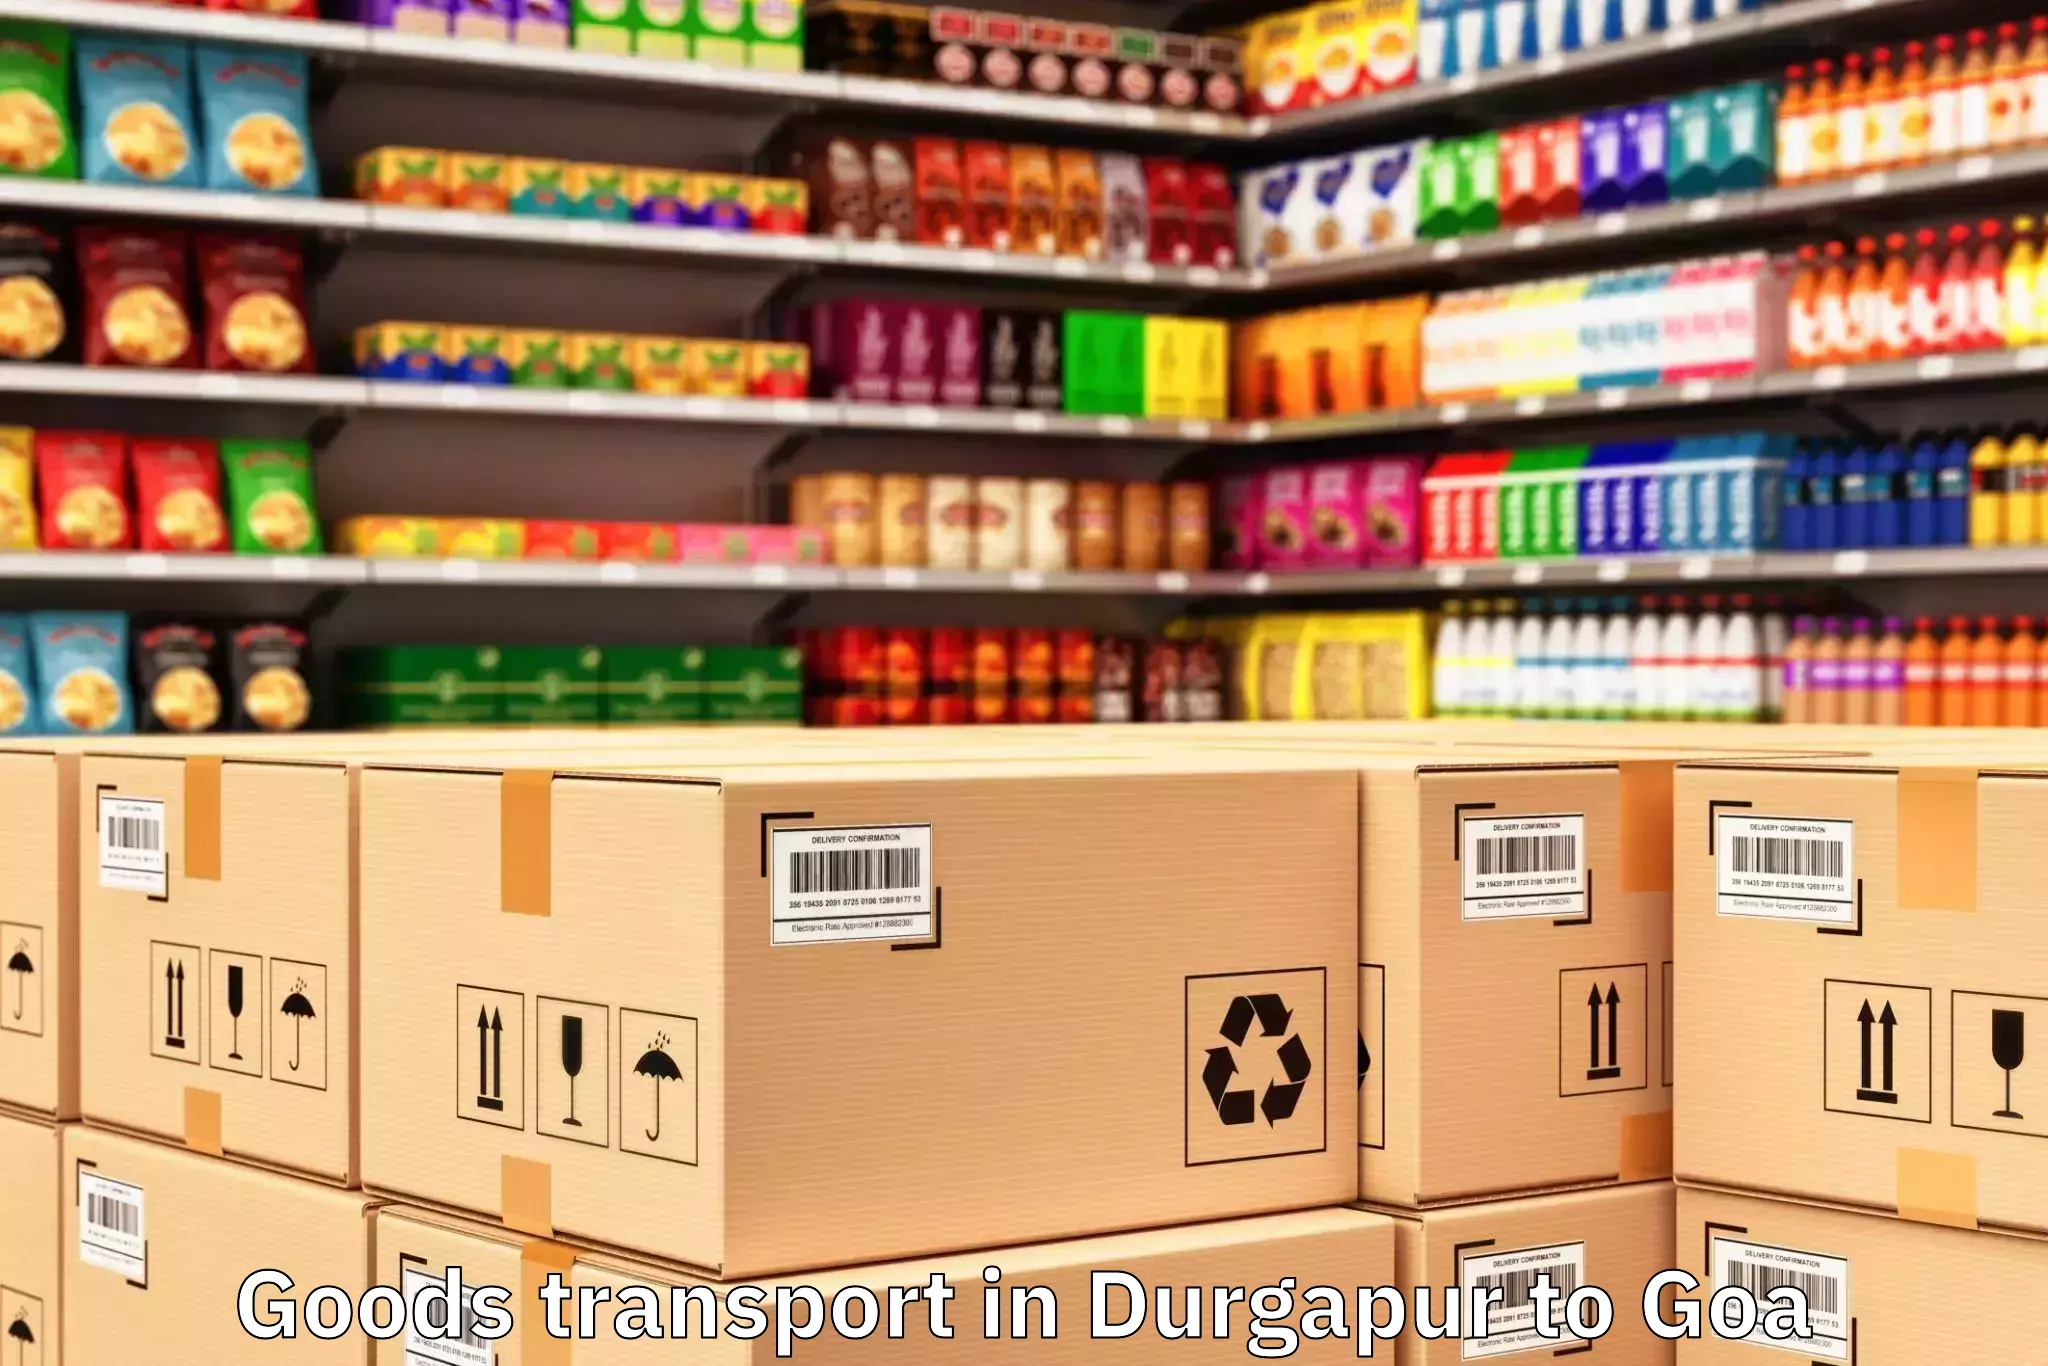 Expert Durgapur to Cavelossim Goods Transport